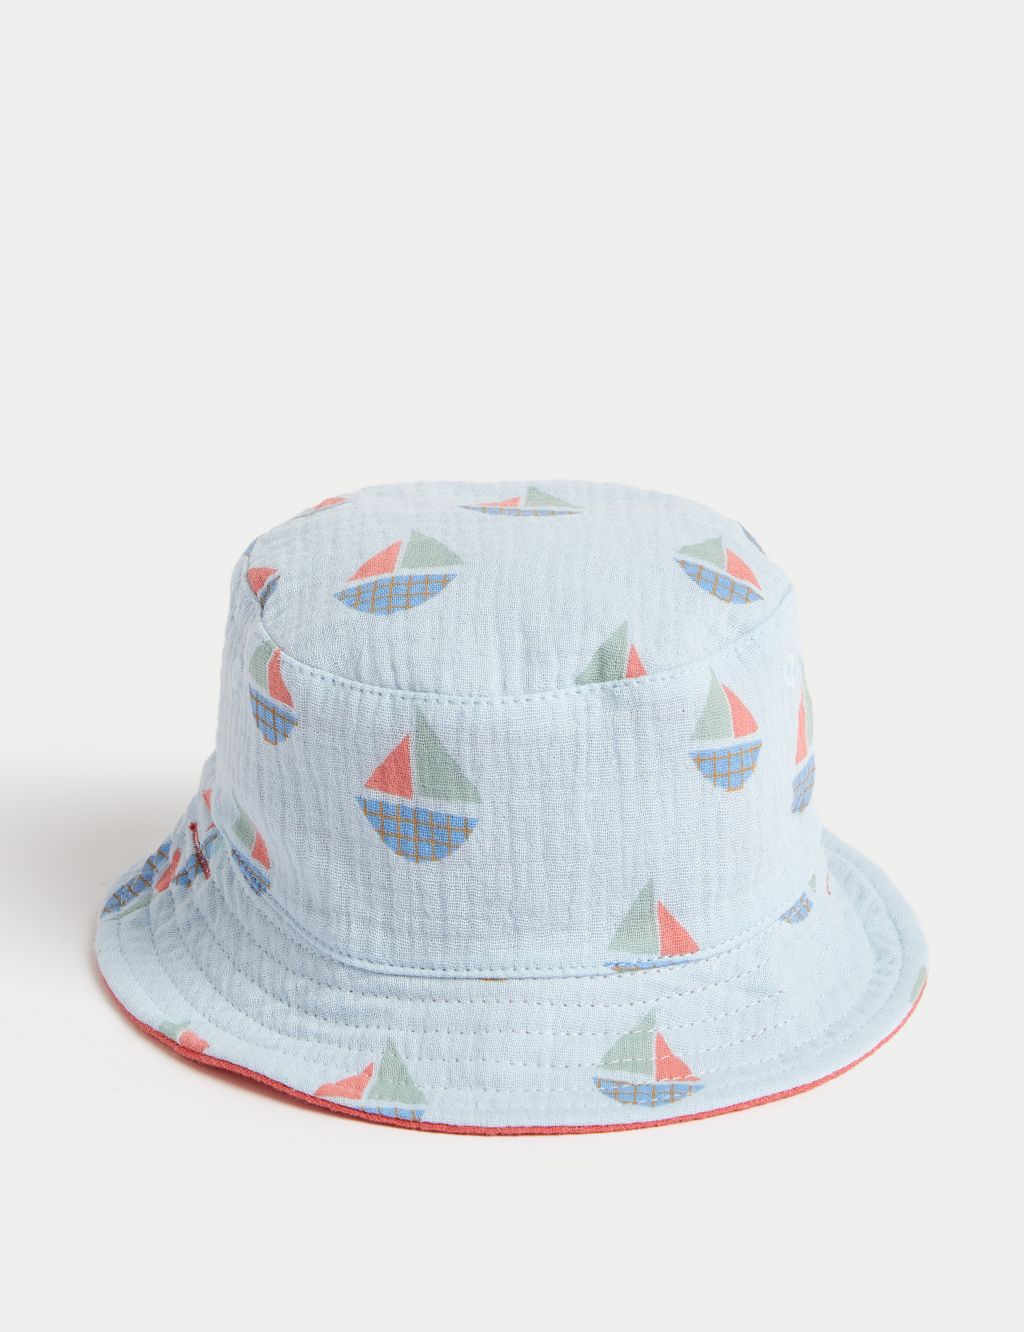 Kids' Pure Cotton Reversible Sun Hat (0-12 Mths) image 2